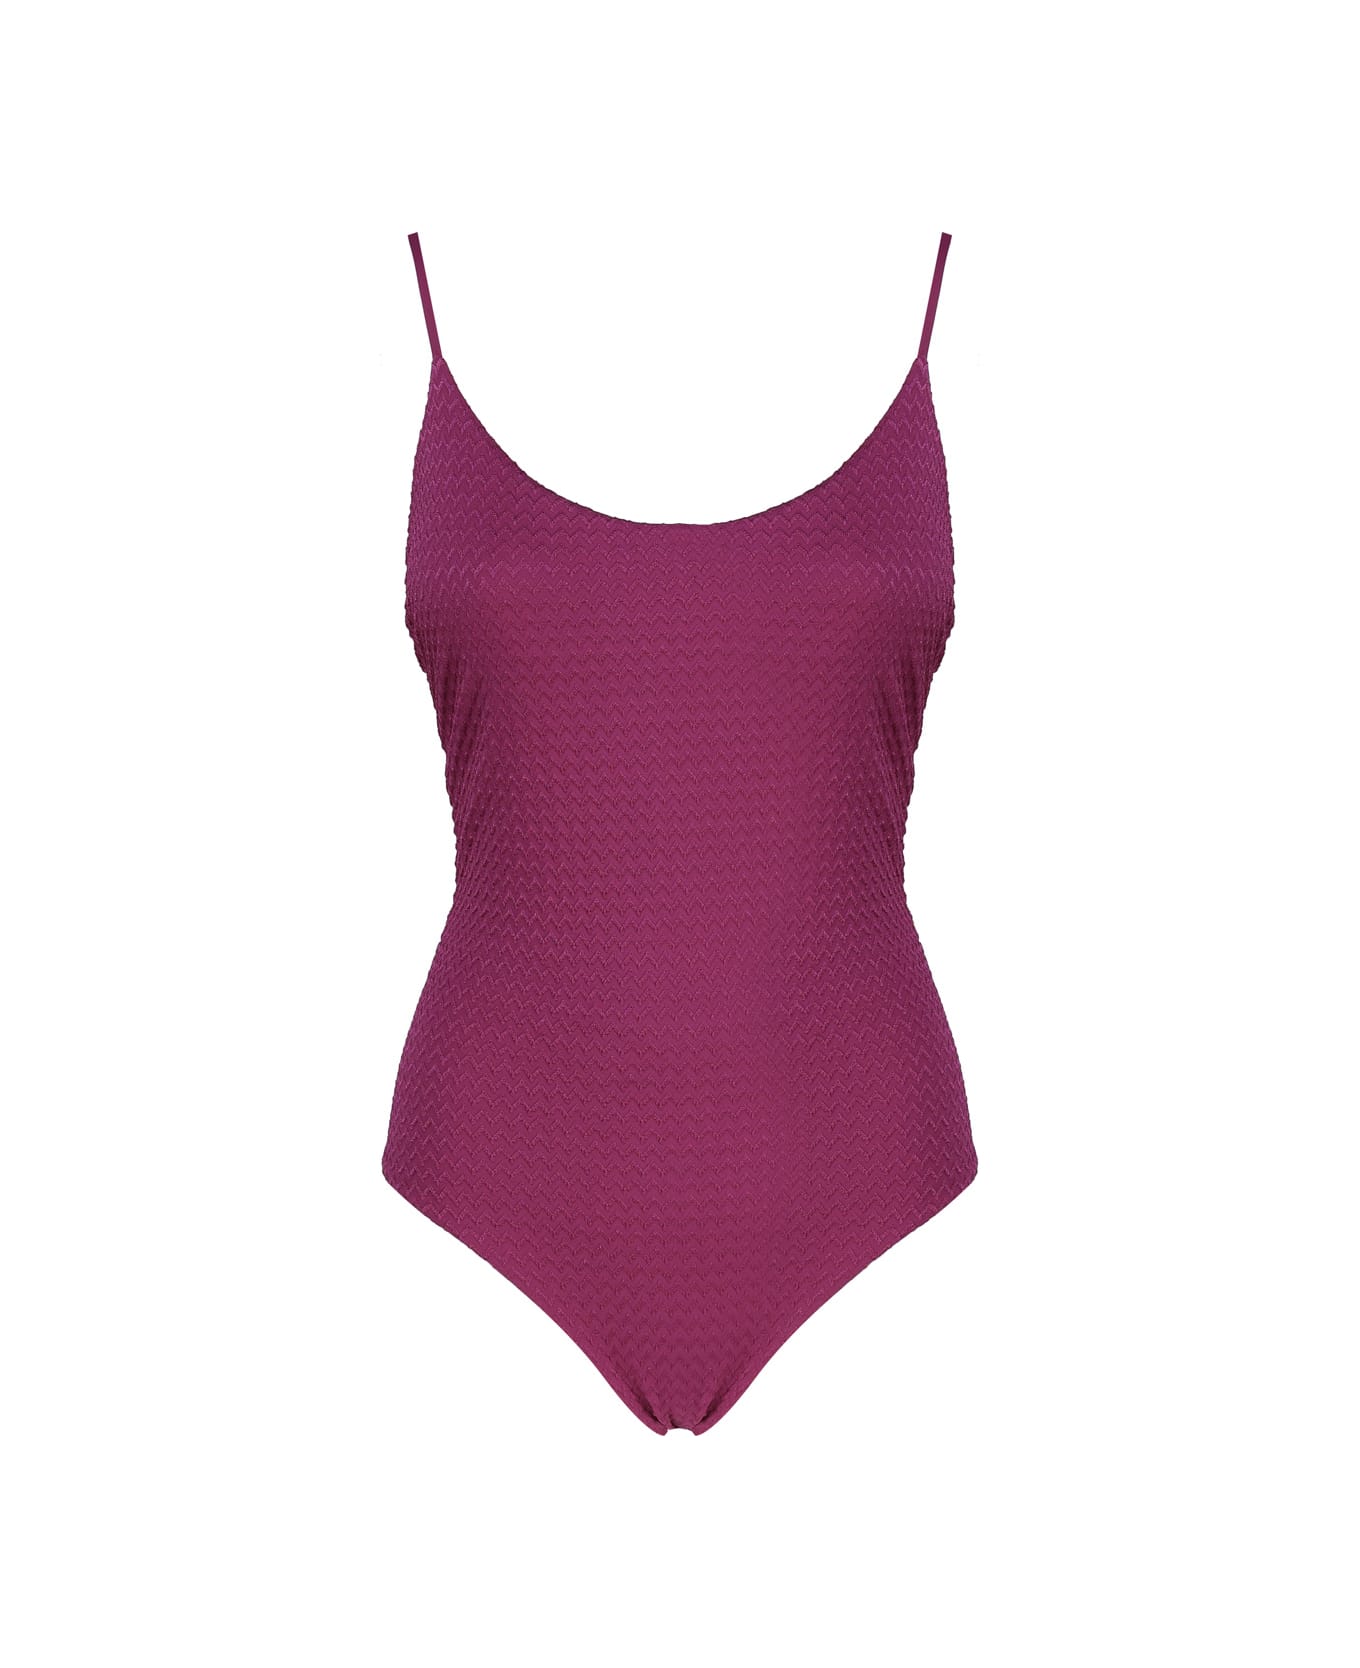 Fisico - Cristina Ferrari Solid Color One-piece Swimsuit - Sangria 水着